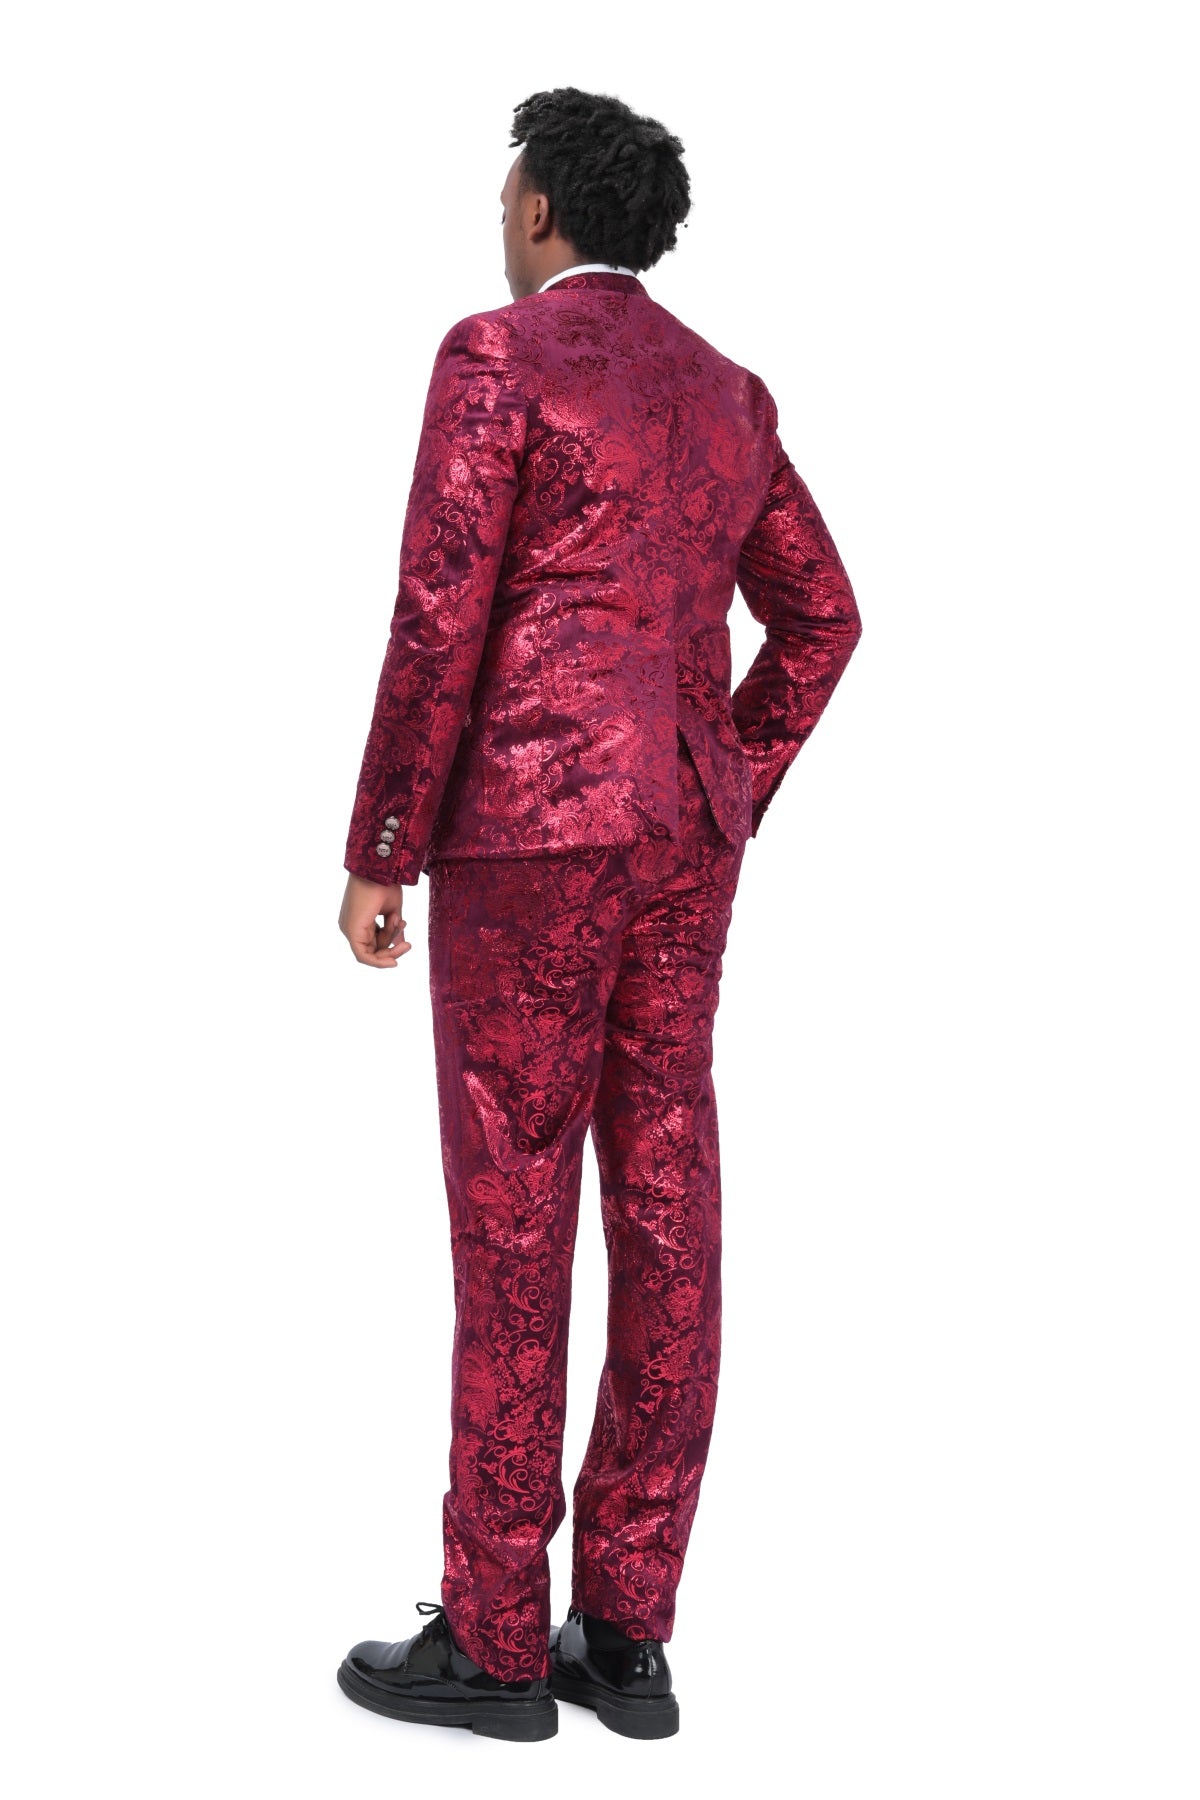 2-Piece Slim Fit Stylish Dress Floral Suit Red